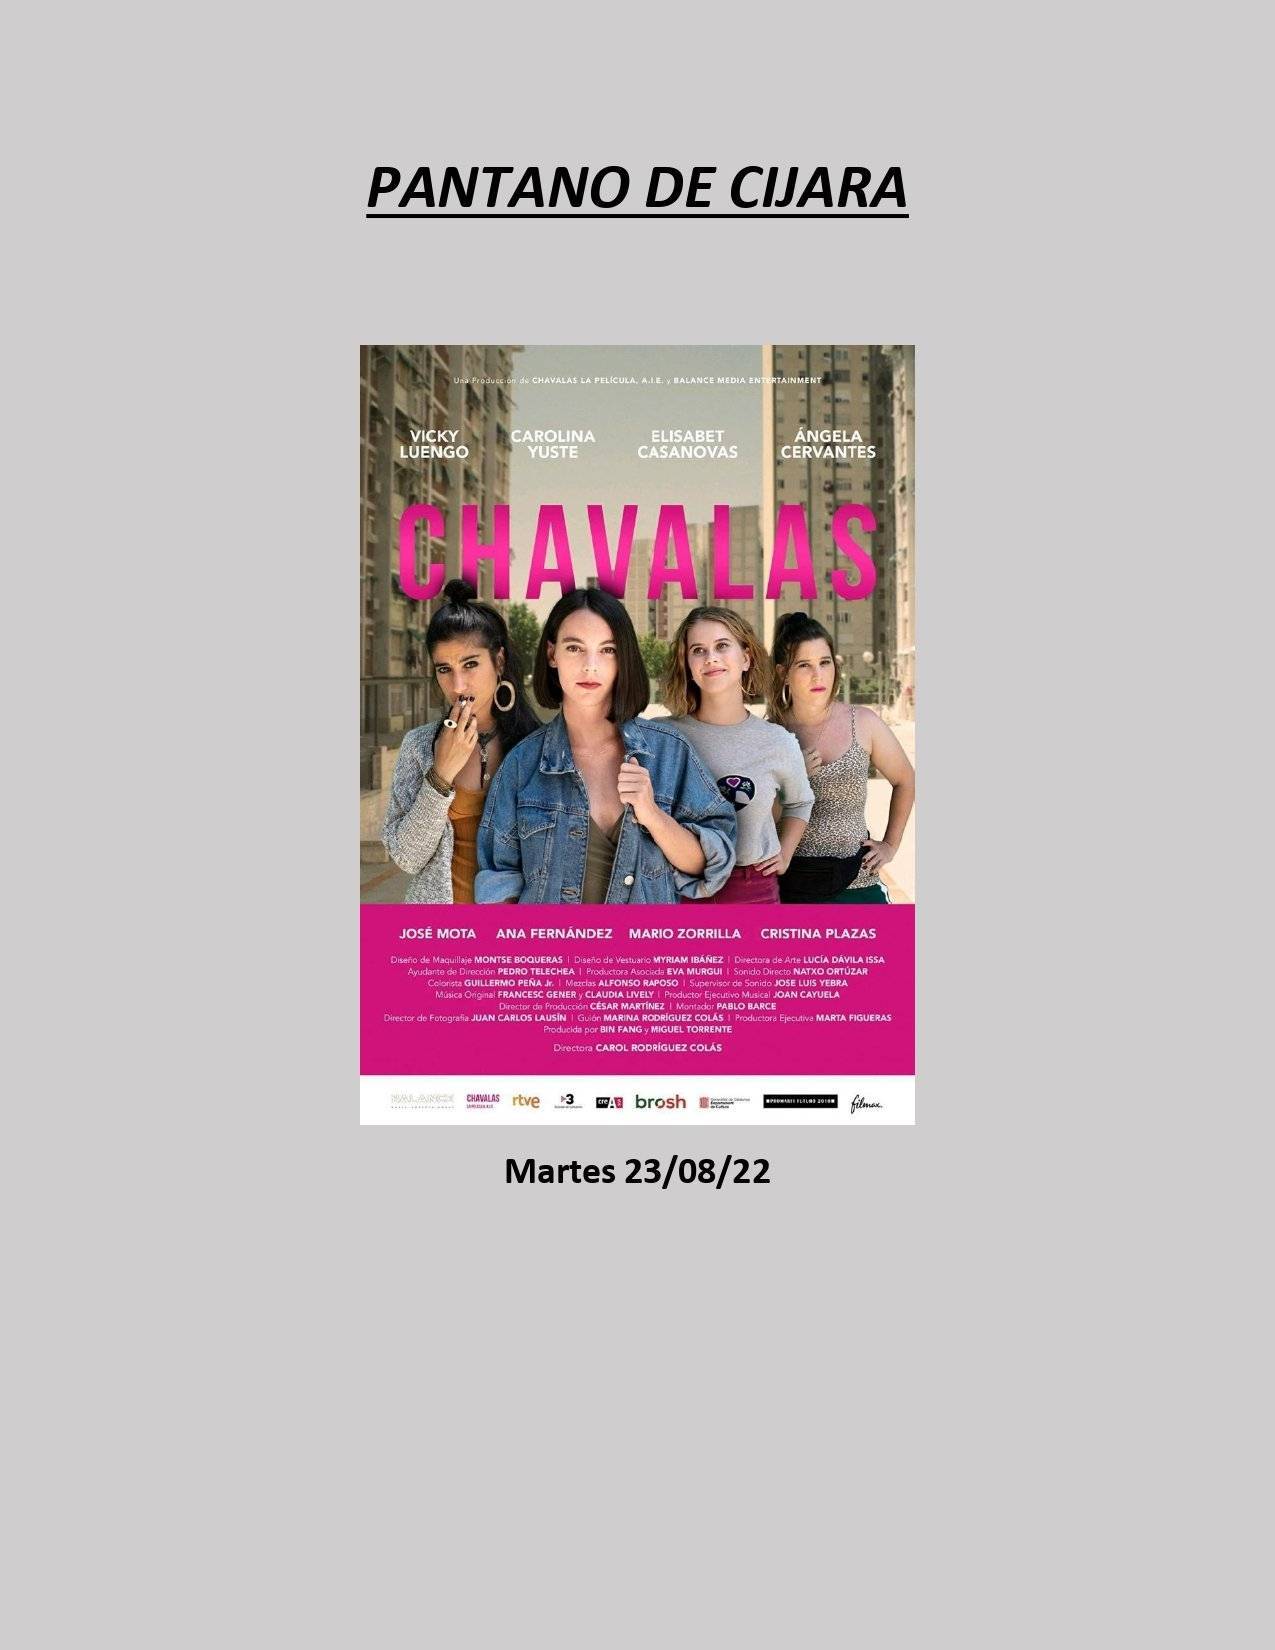 Cine de verano (2022) - Alía (Cáceres) 3